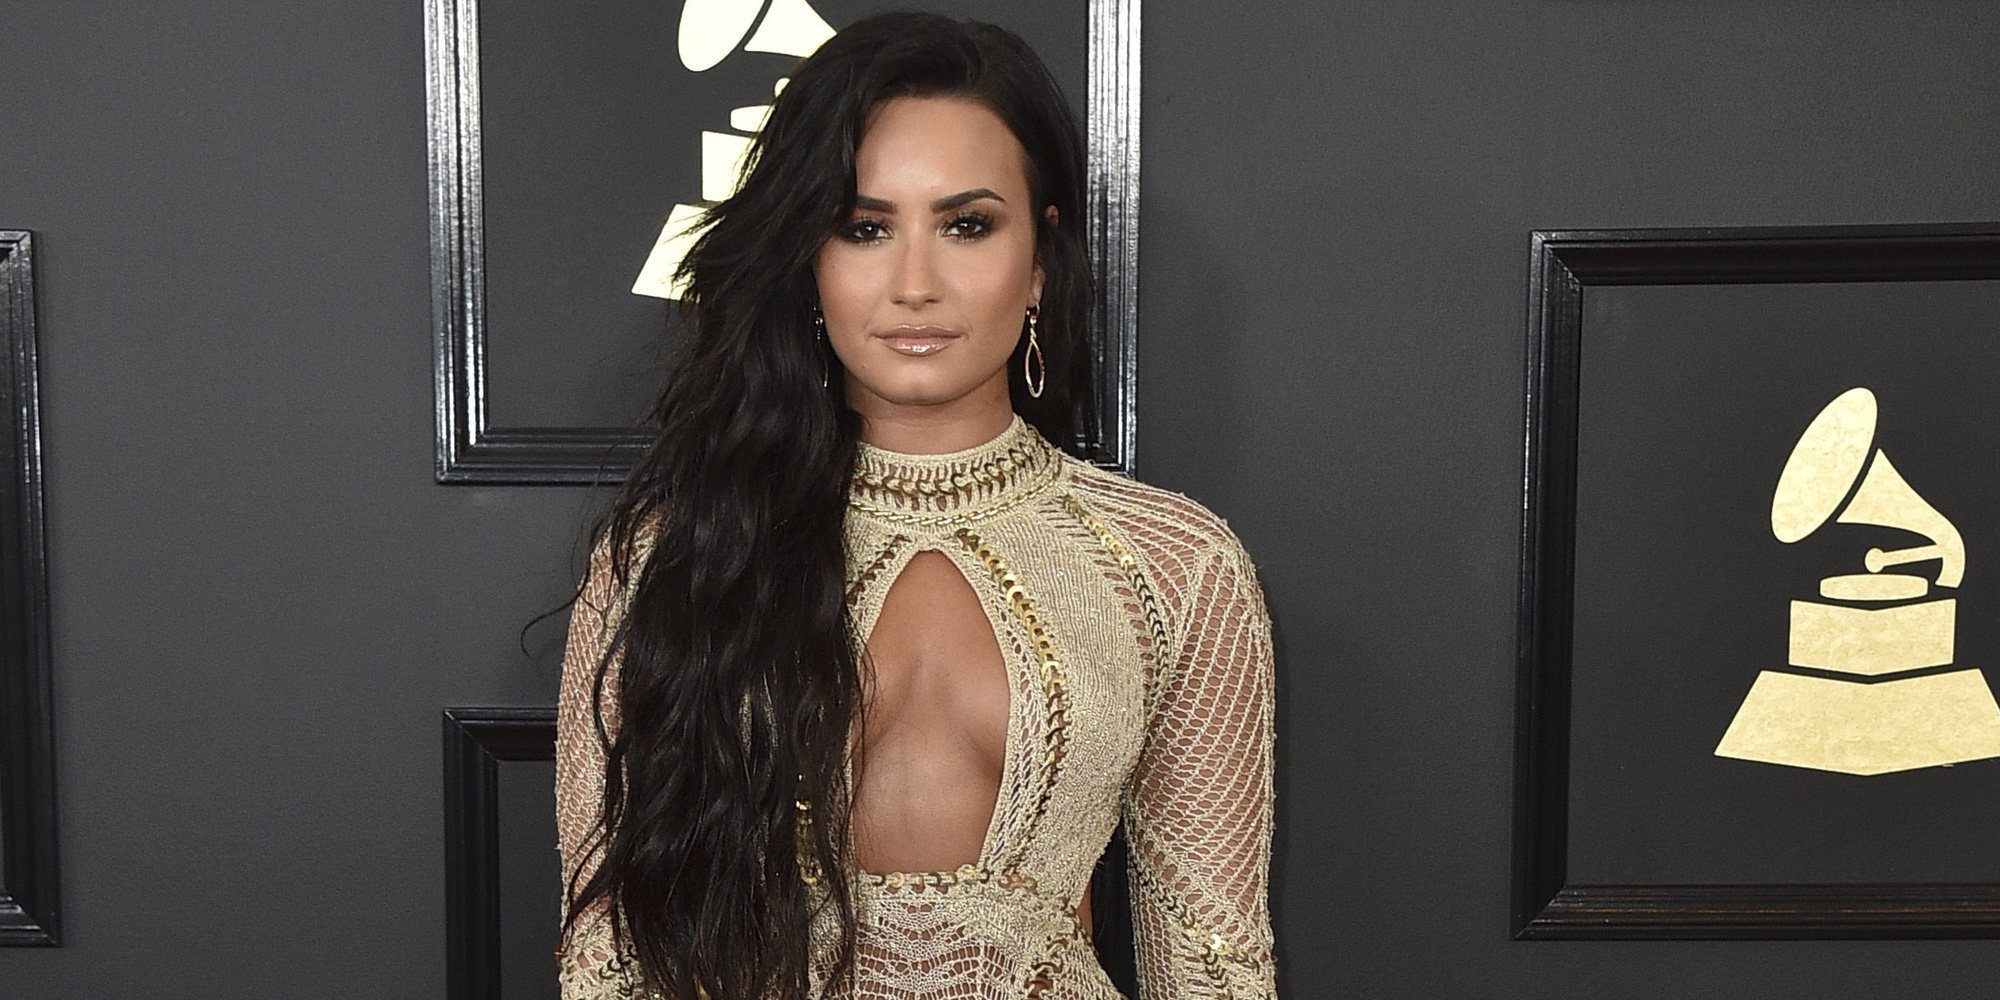 Hackean la cuenta de Snapchat de Demi Lovato y muestran fotos desnuda de la cantante